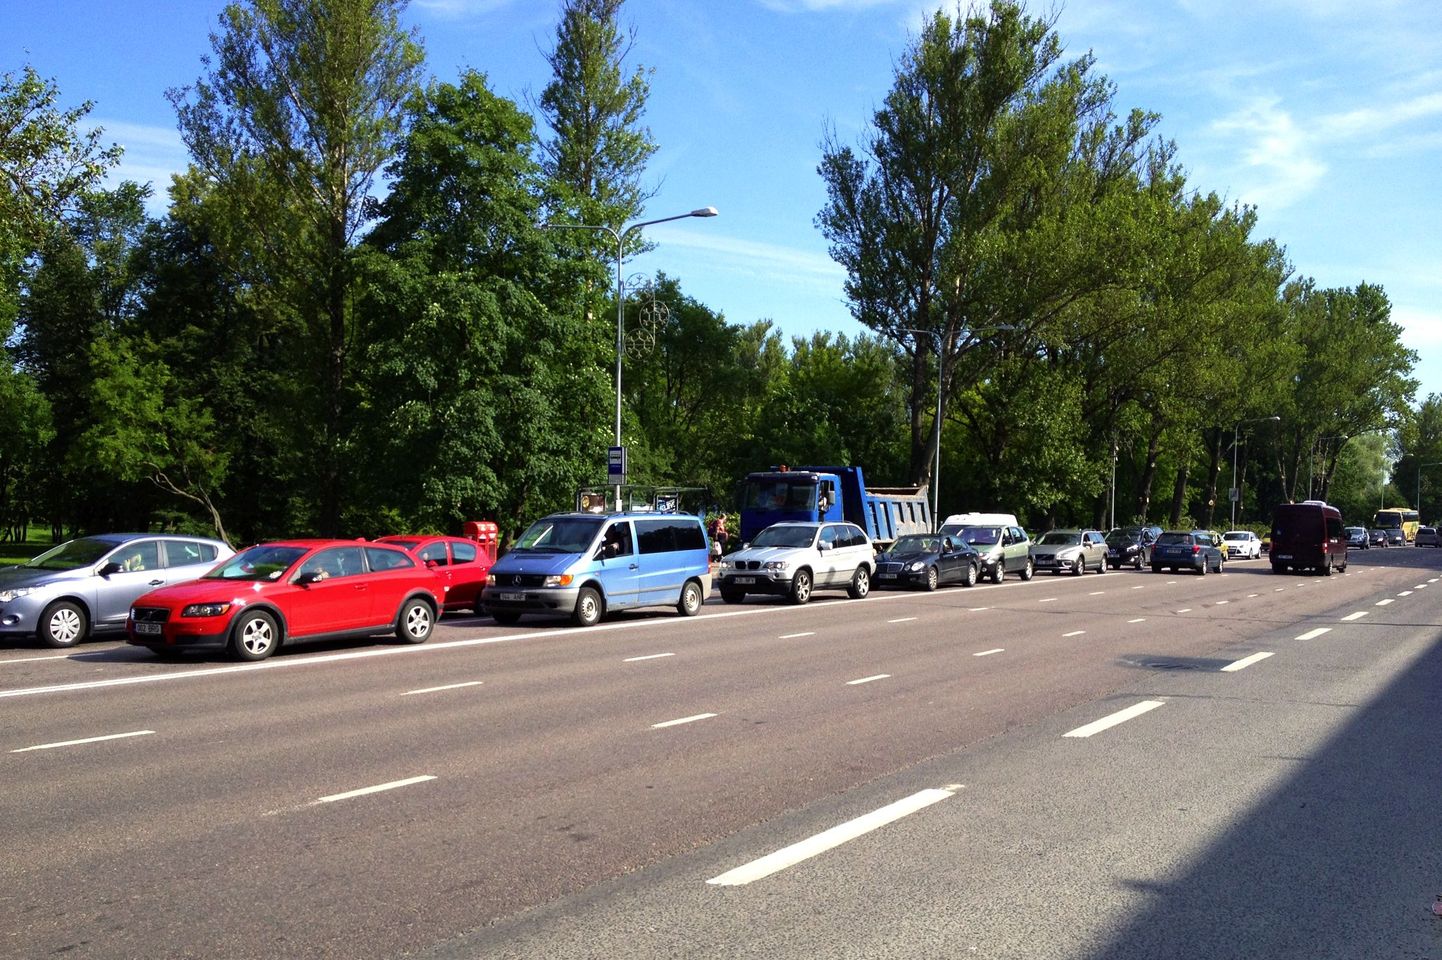 25. juuli hommikul läks Narva maanteel trammide kesklinna tagasi pööramise kohas rikki Devori reiside buss, mis seiskas kolmeks tunniks Kadrioru trammiliikluse ja tekitas Pirita teele hiigelummiku.